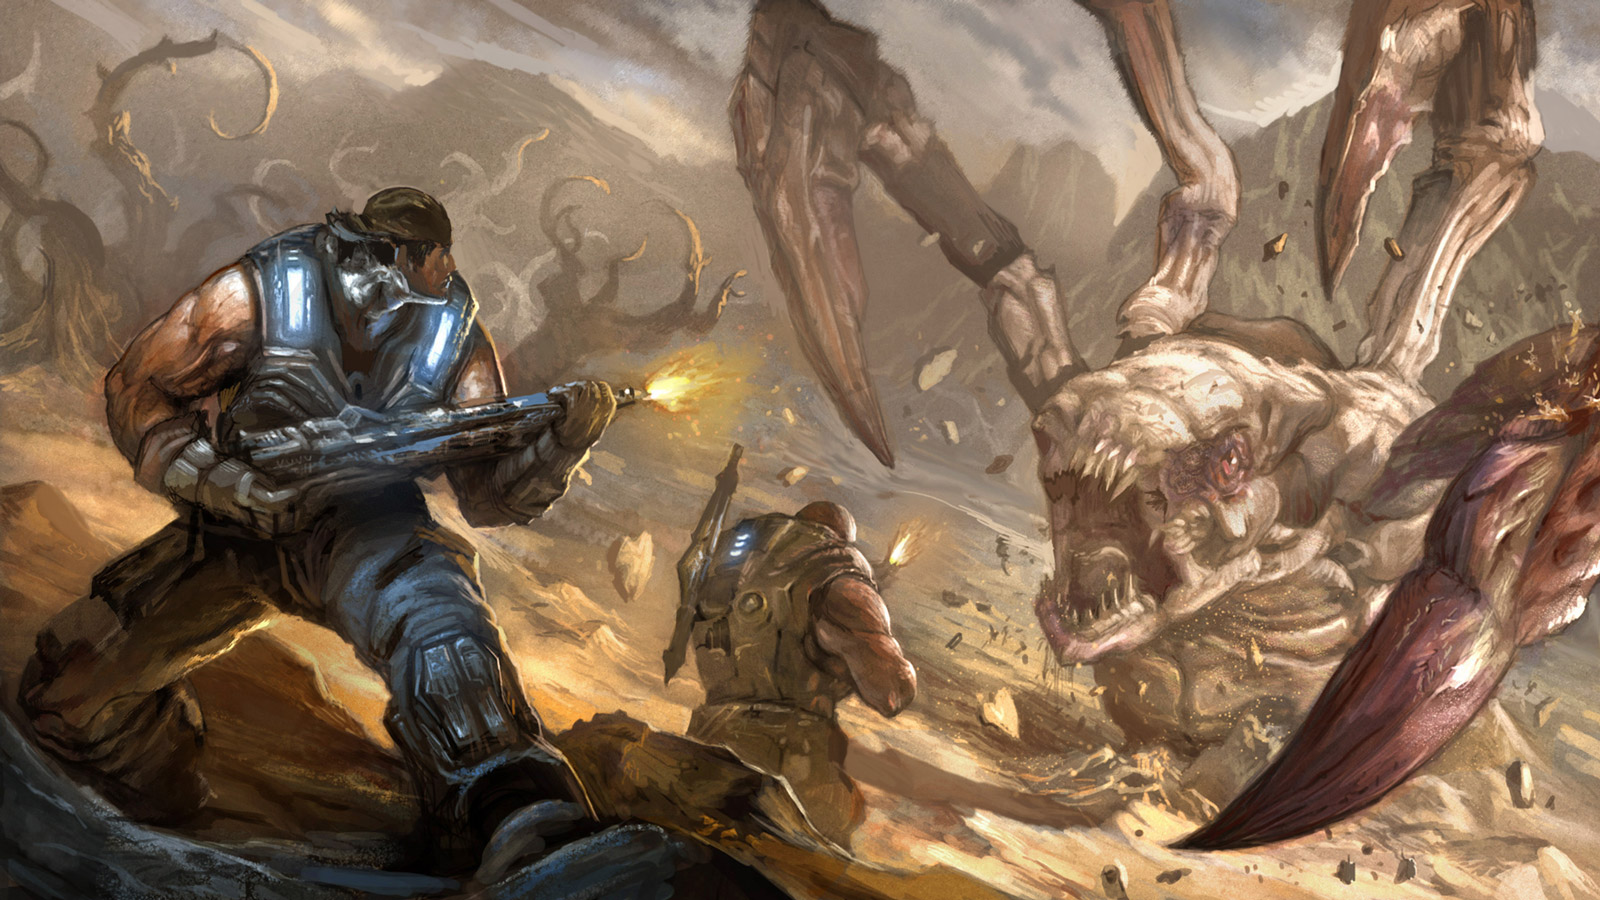 Gears of War 3 Wallpaper in 1600x900